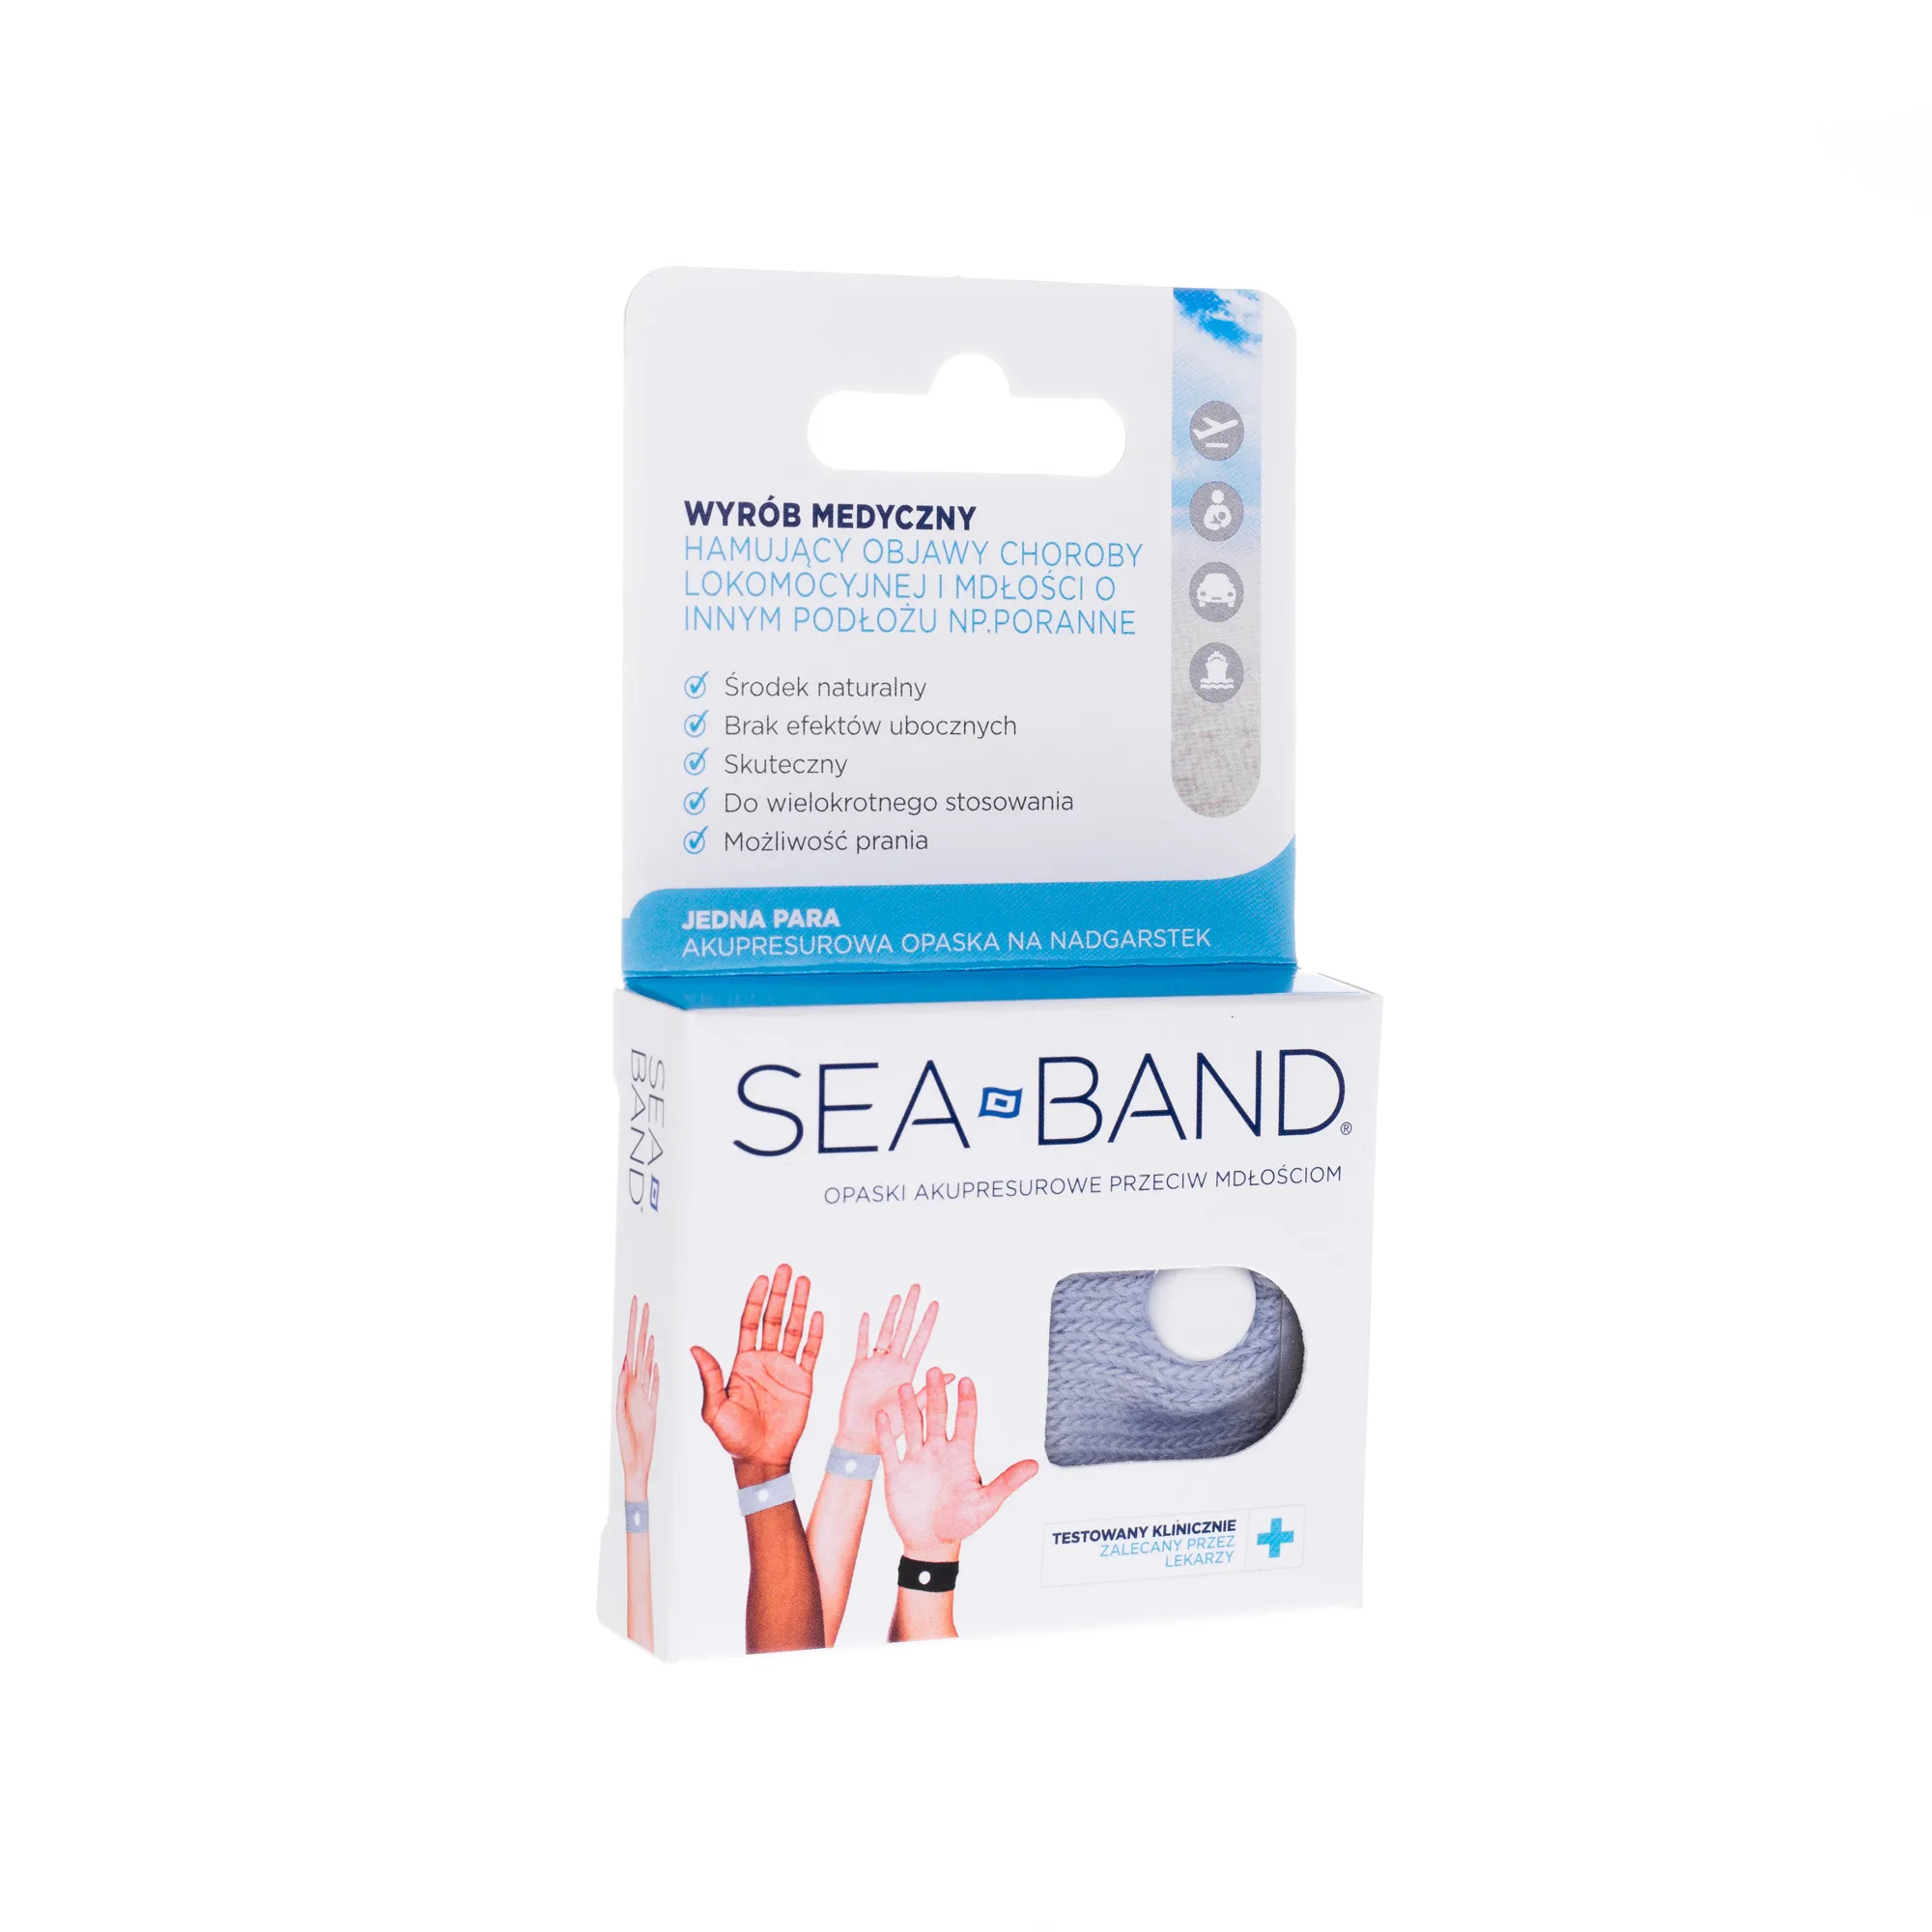 Sea Band opaski akupresurowe przeciw mdłościom, dla dorosłych